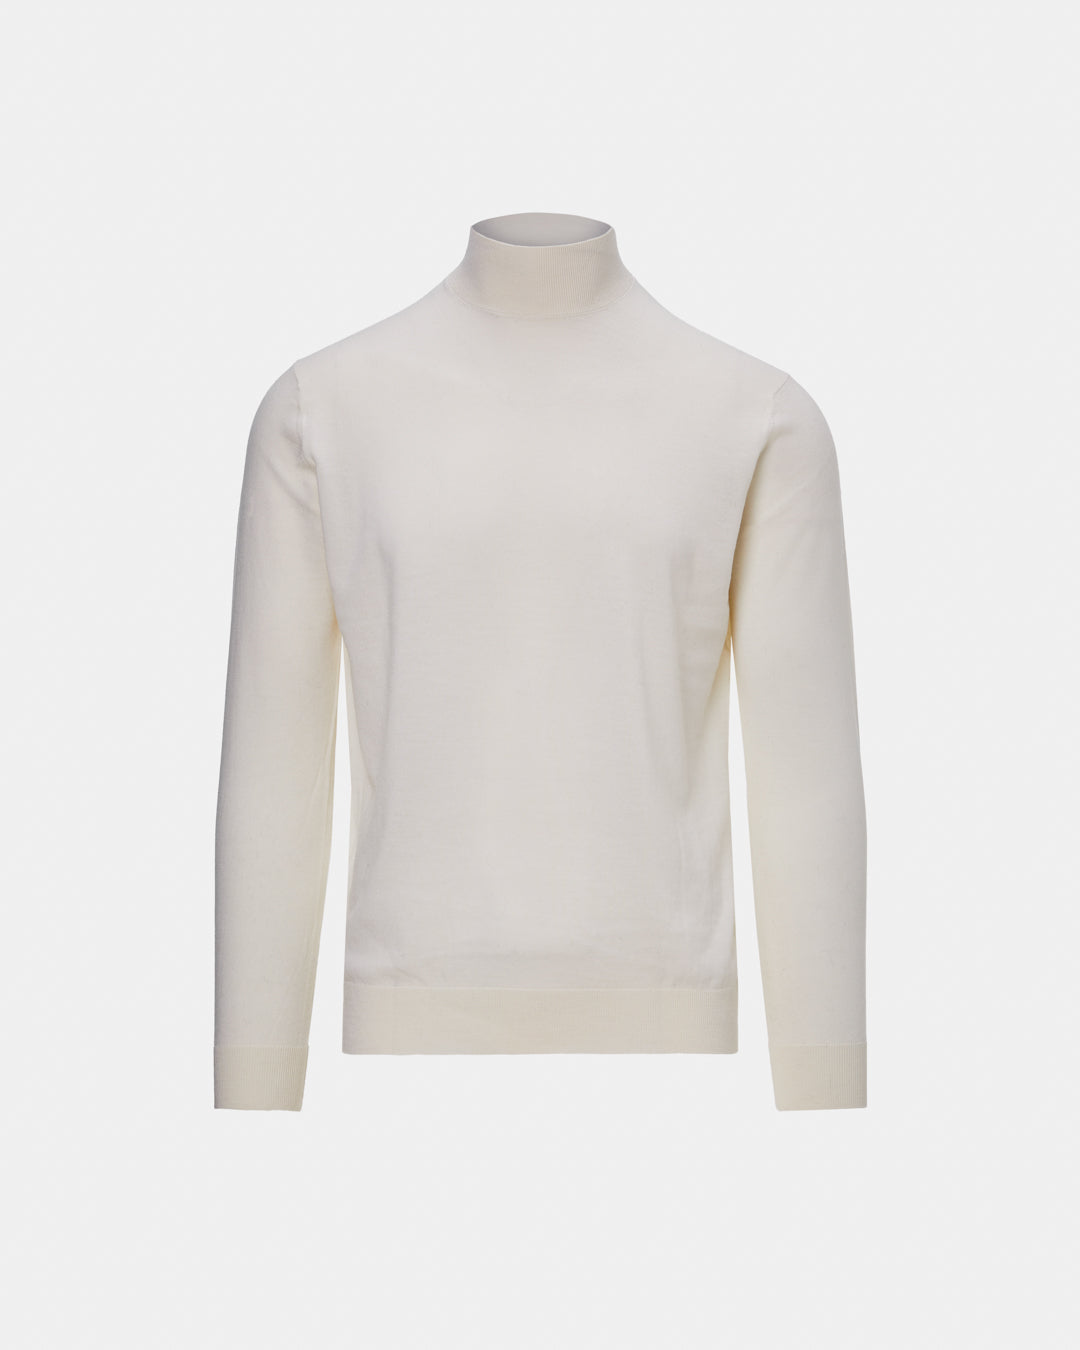 White 16 GG merino wool high neck sweater